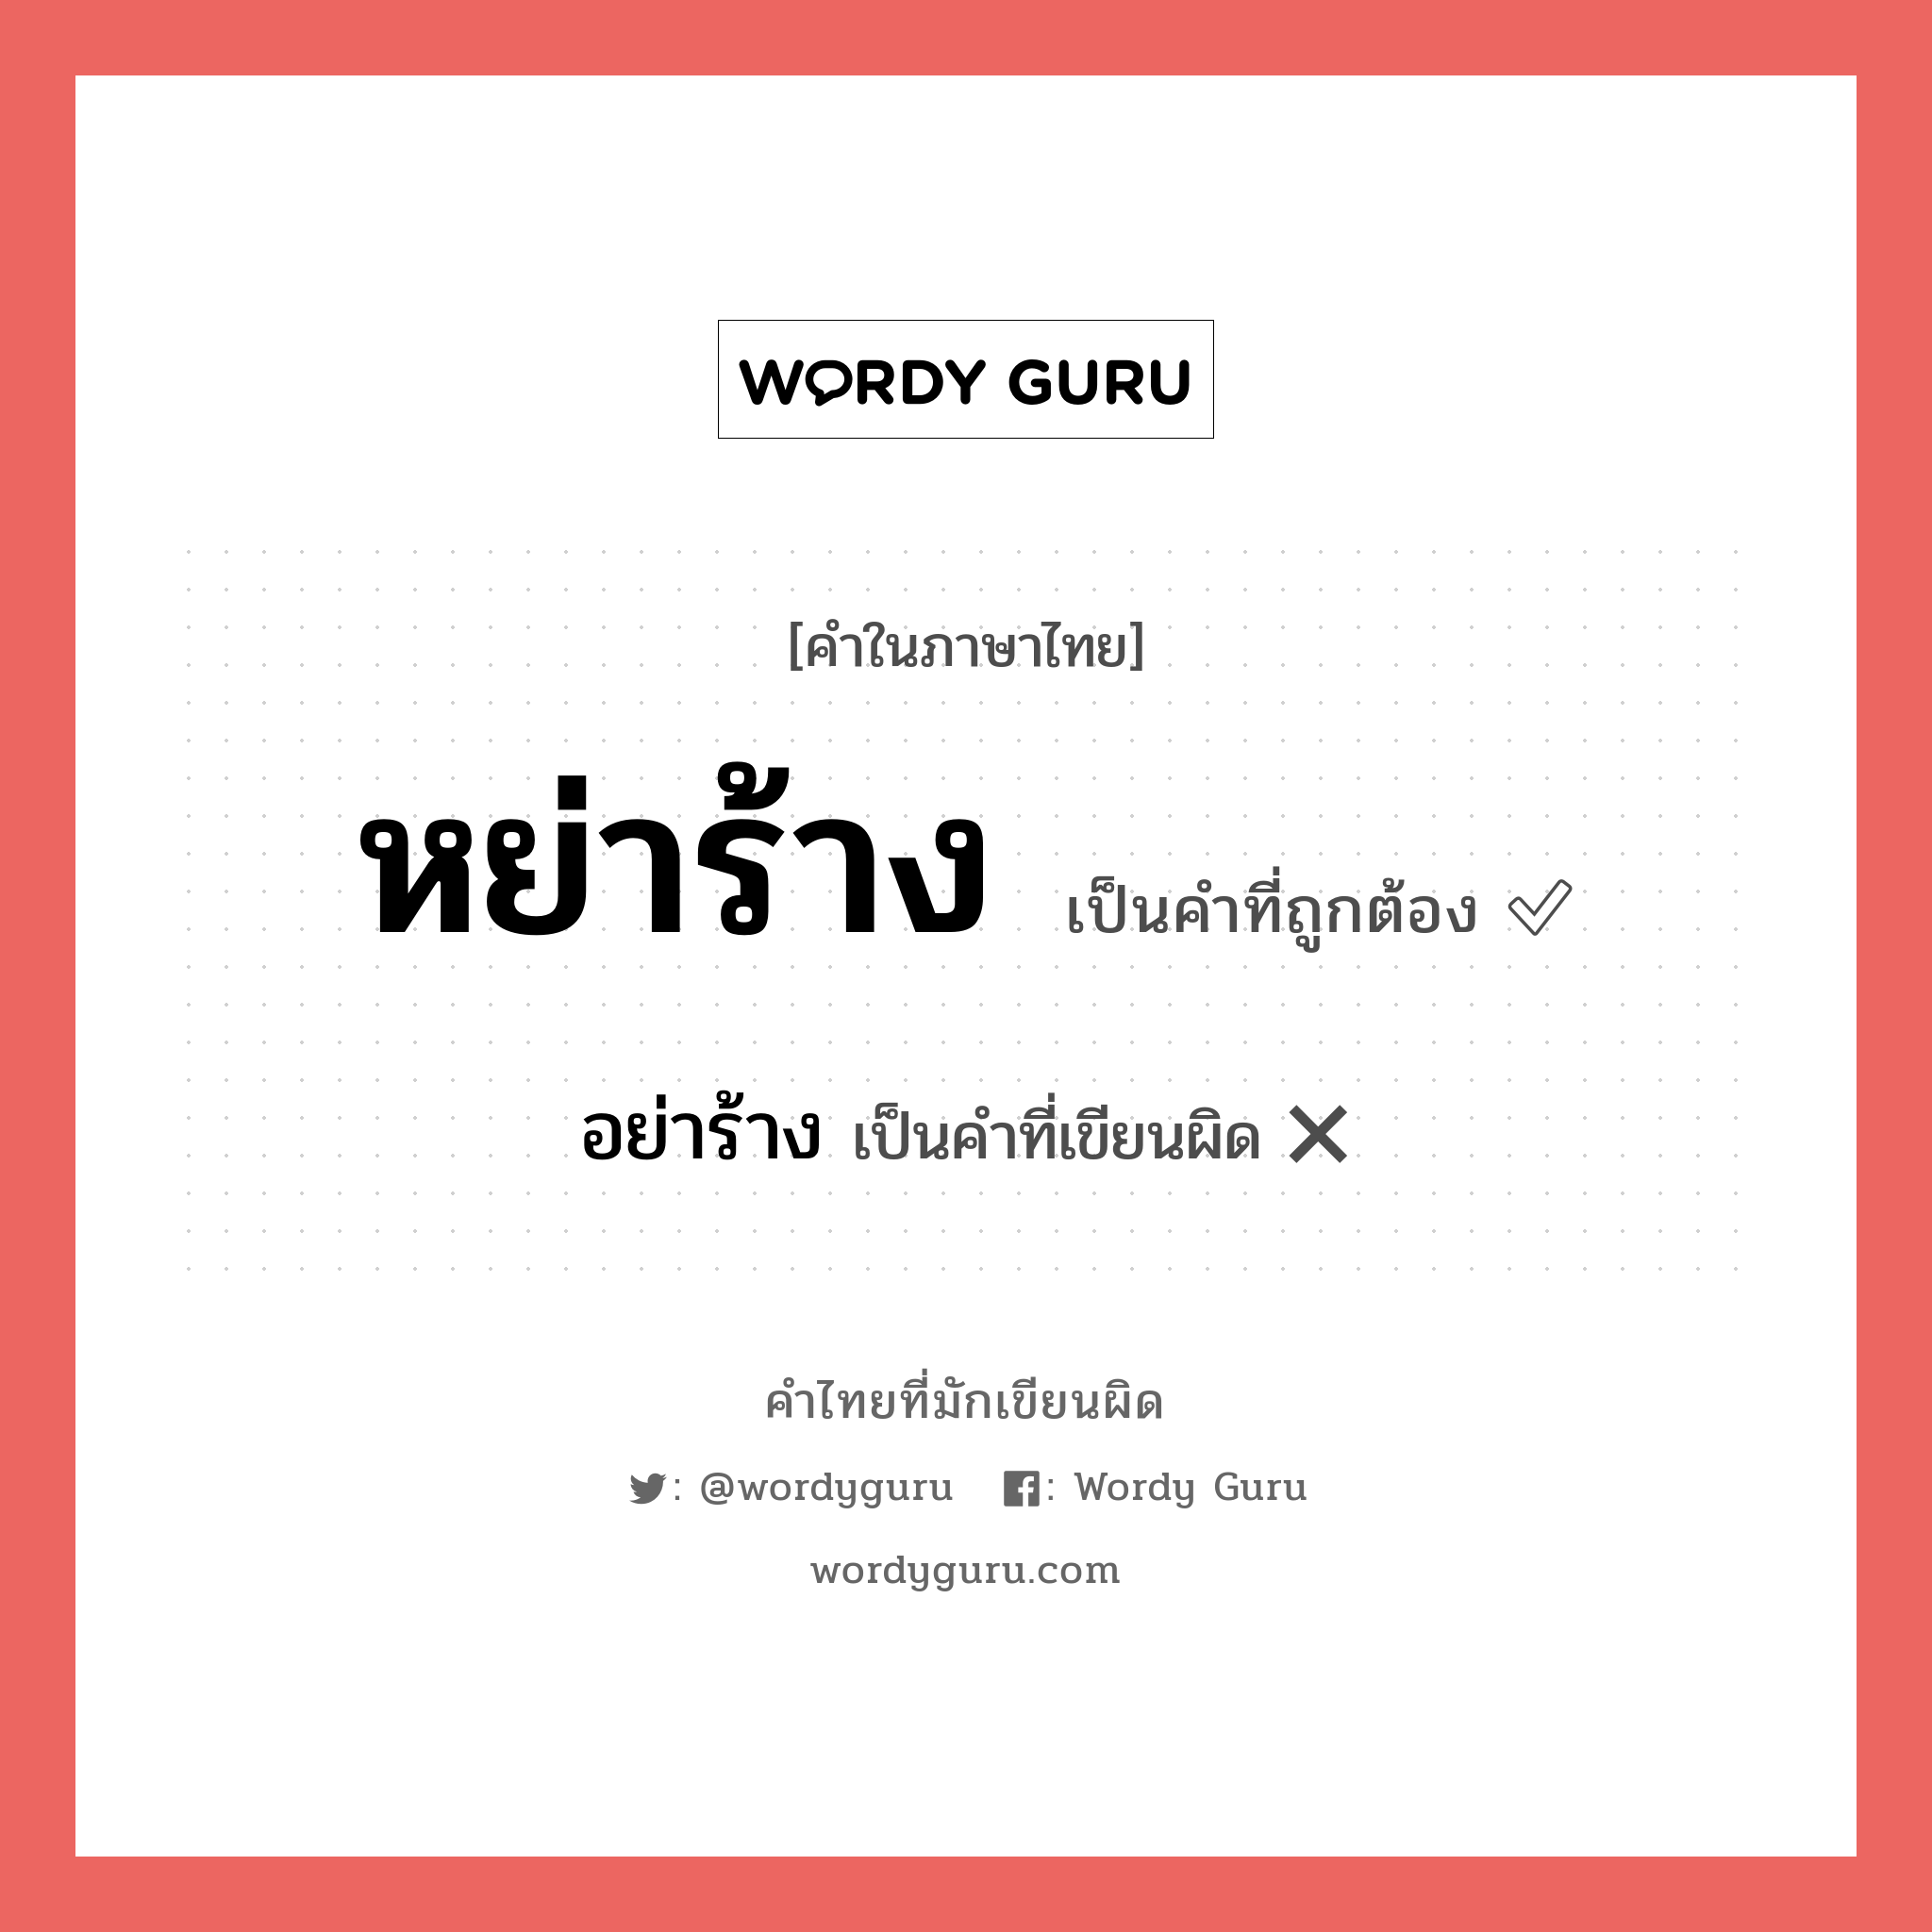 อย่าร้าง หรือ หย่าร้าง คำไหนเขียนถูก?, คำในภาษาไทยที่มักเขียนผิด อย่าร้าง คำที่ผิด ❌ หย่าร้าง